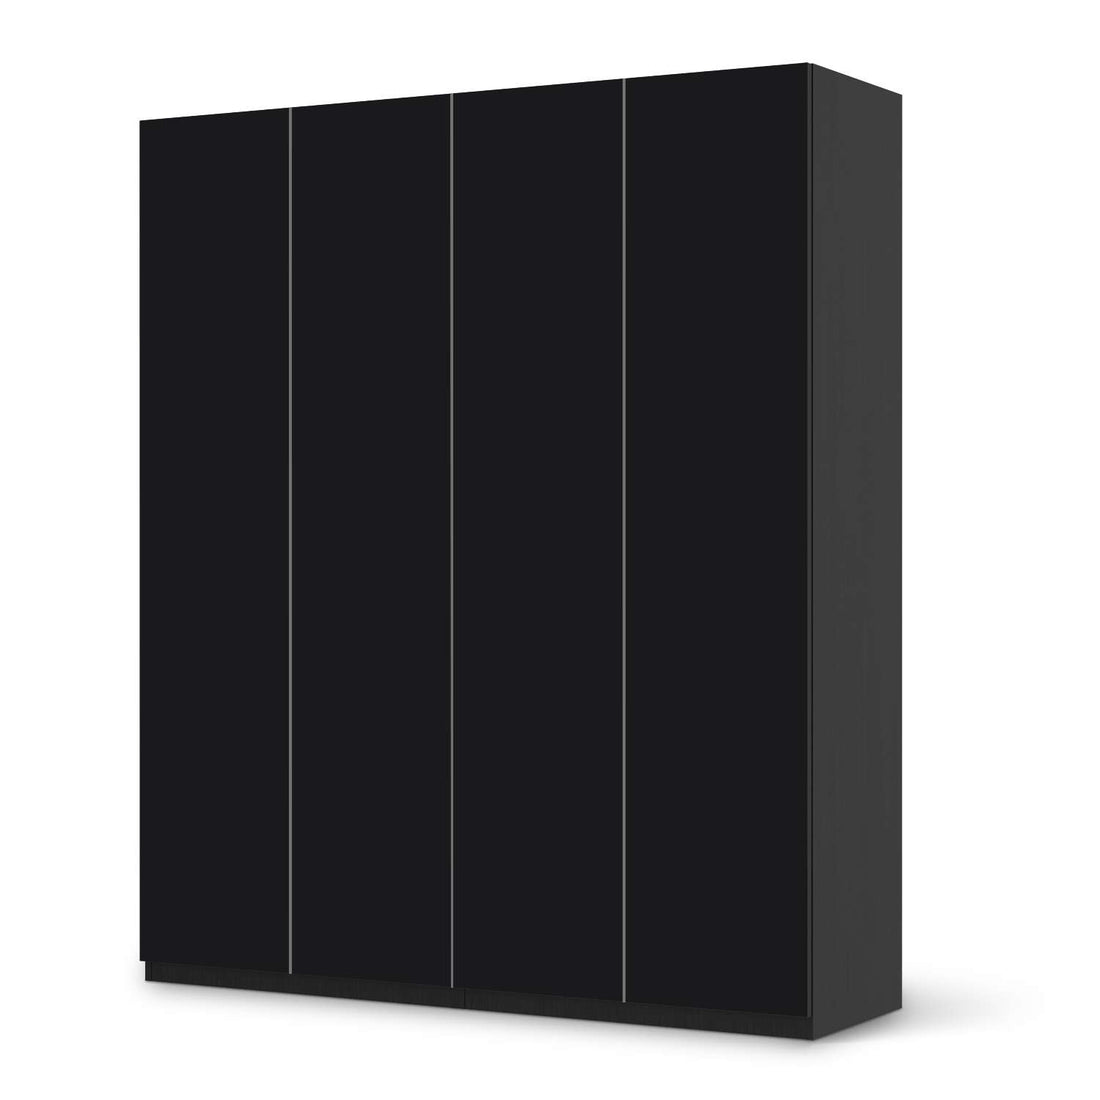 Möbelfolie Schwarz - IKEA Pax Schrank 236 cm Höhe - 4 Türen - schwarz